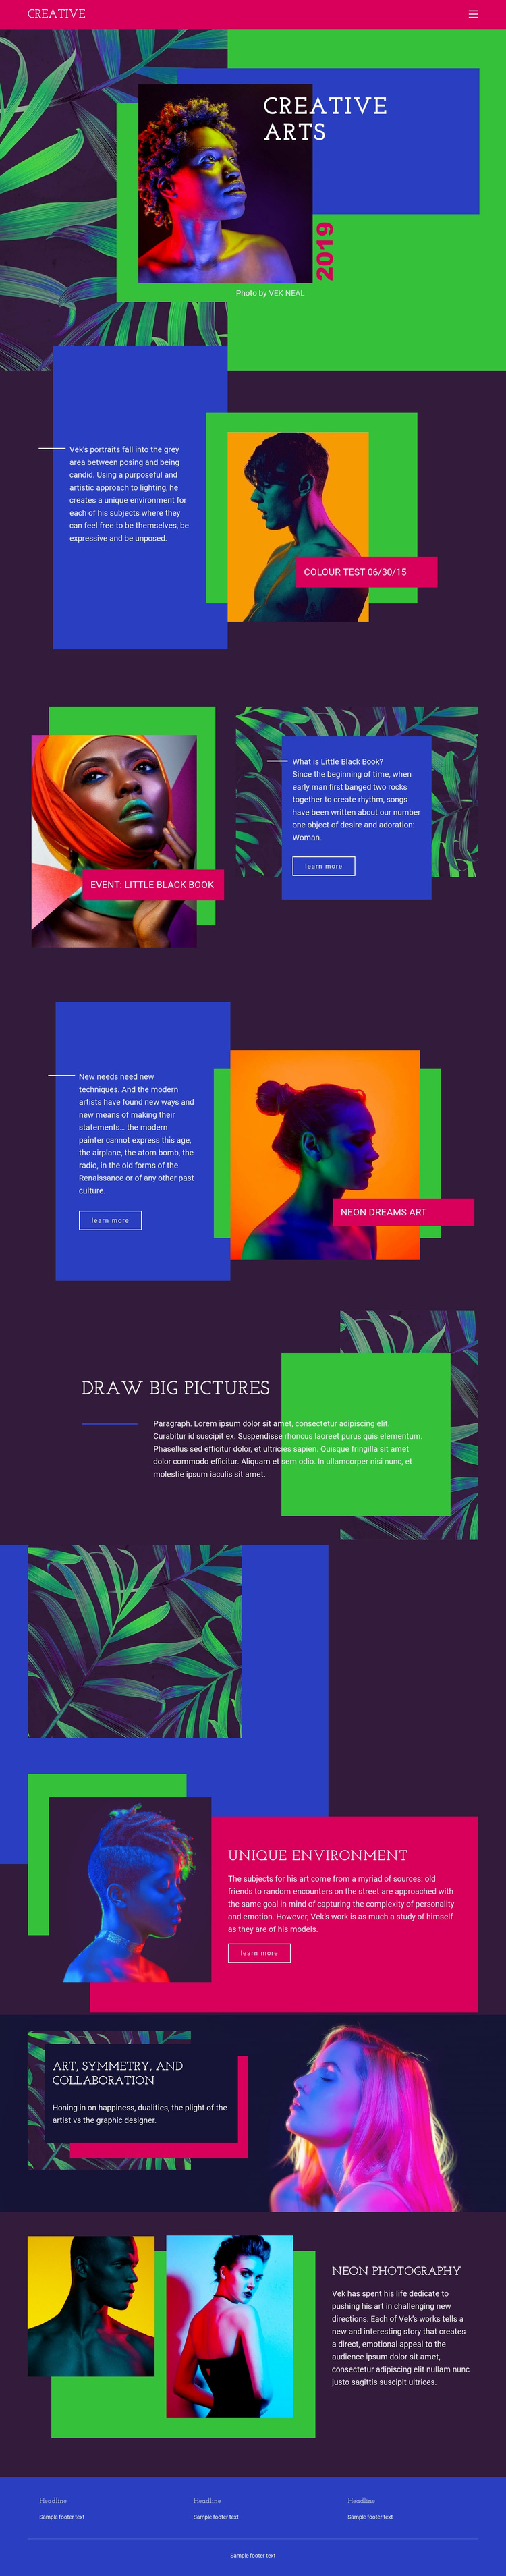 Creative Art Ideas Website Template